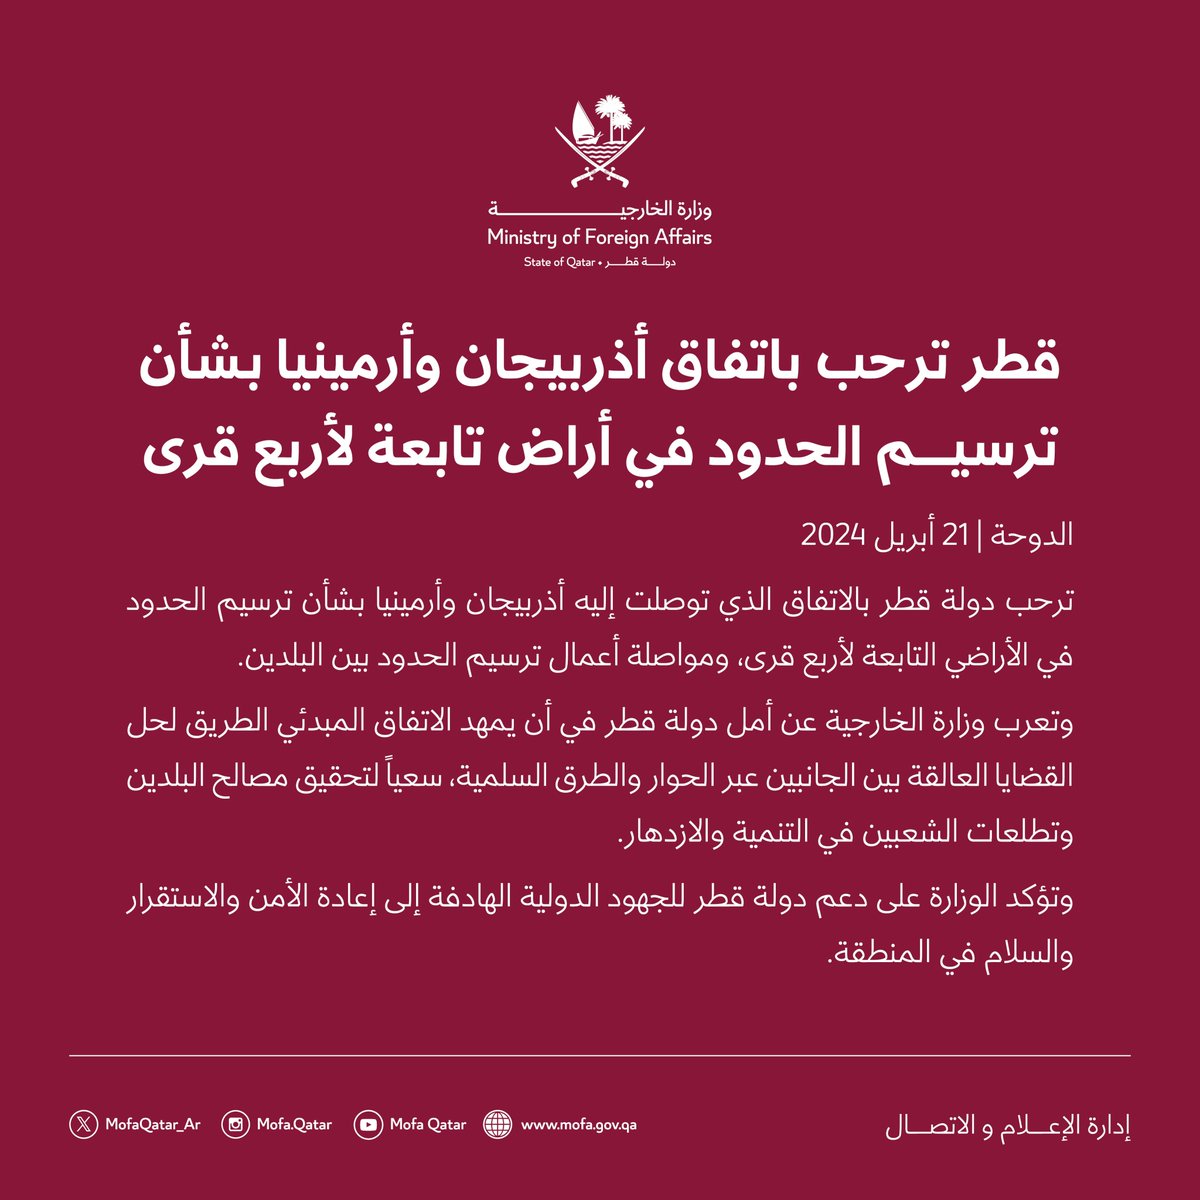 بيان : قطر ترحب باتفاق أذربيجان وأرمينيا بشأن ترسيم الحدود في أراض تابعة لأربع قرى 

#الخارجية_القطرية